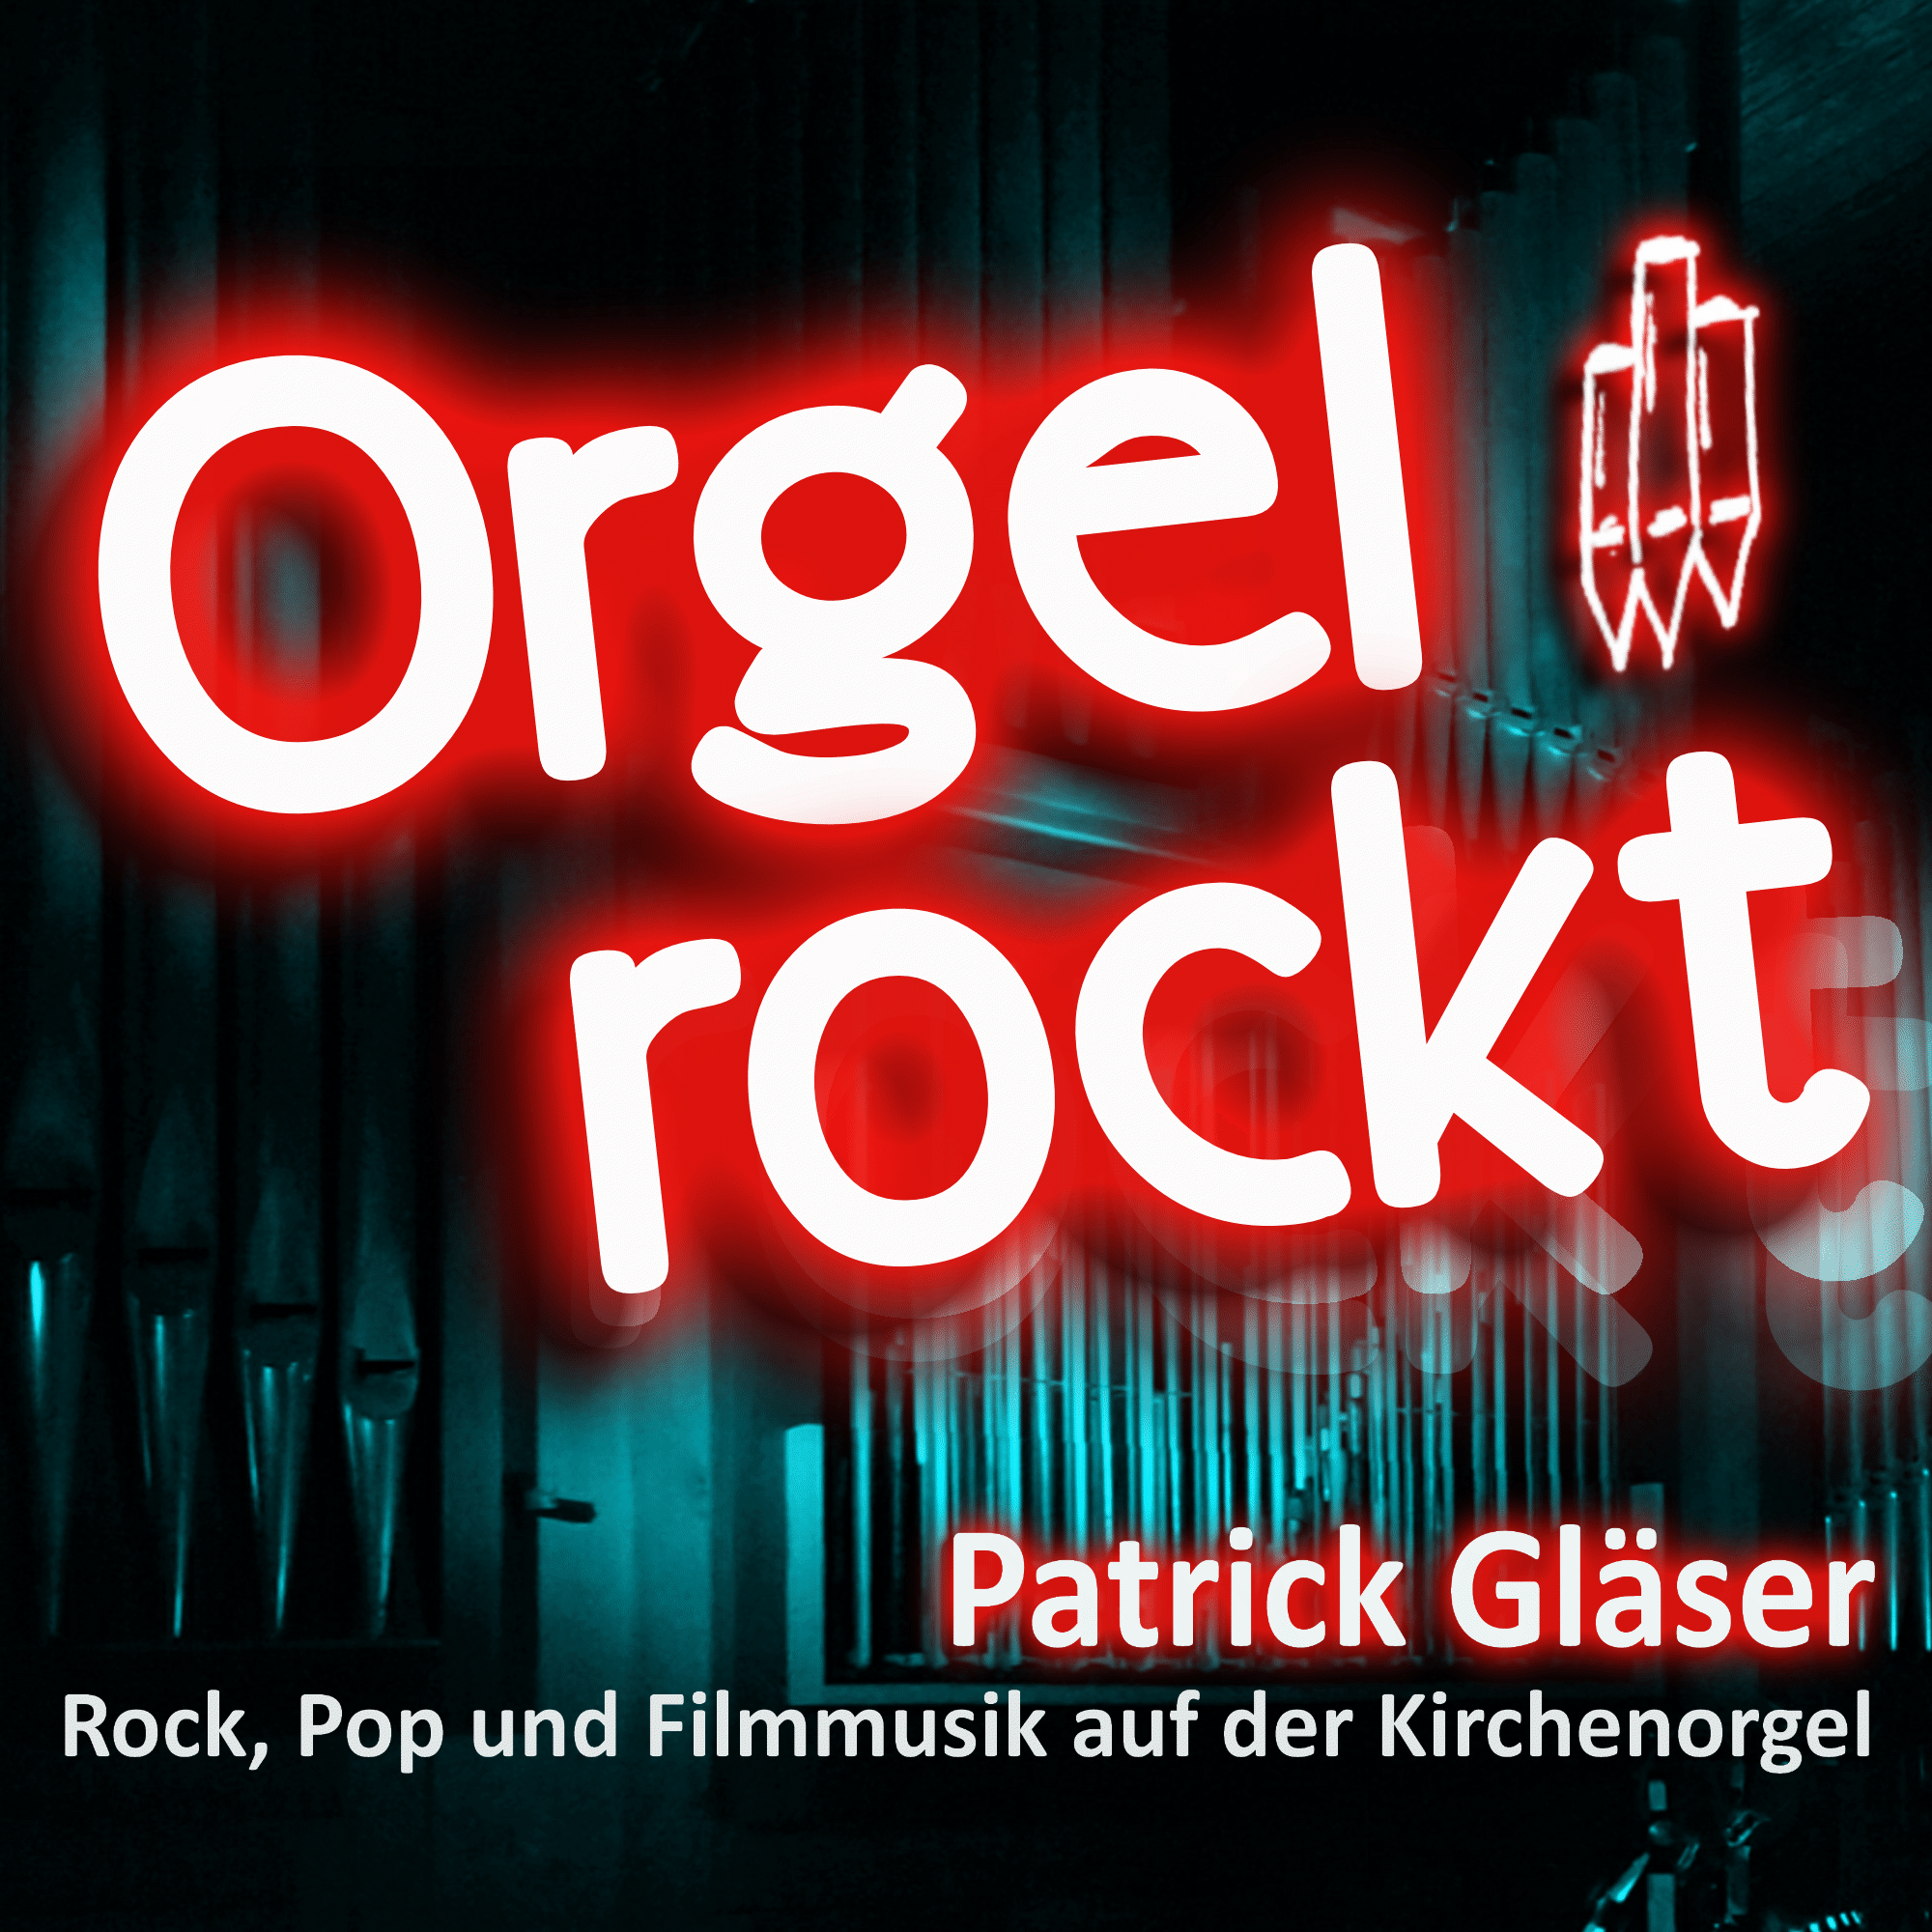 Orgel rockt! - Rock, Pop und Filmmusik auf der Kirchenorgel